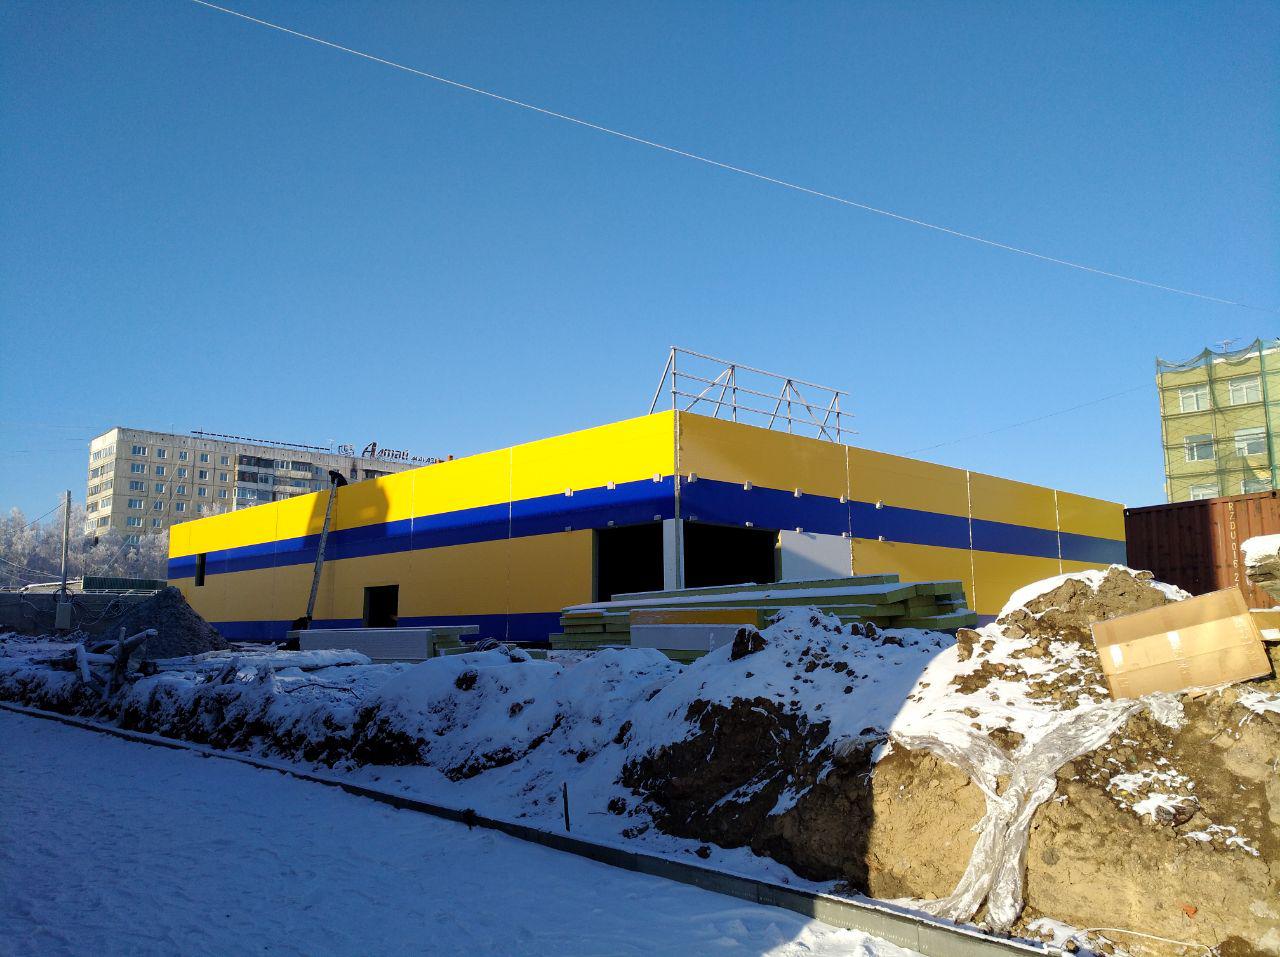 Эксперты гадают о назначении строящегося в Барнауле объекта, похожего на "Ленту"